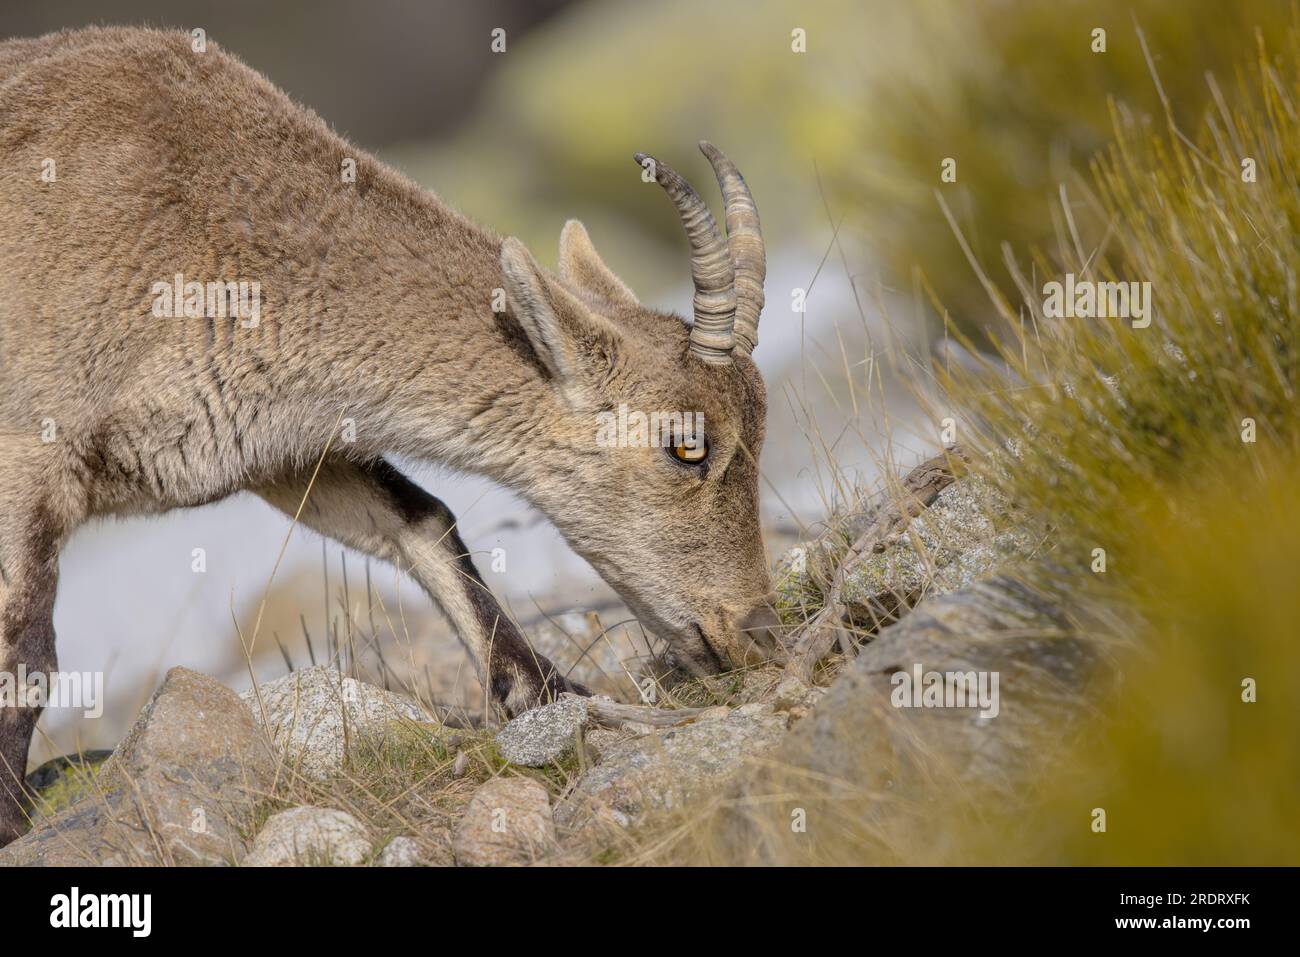 Westspanische Ibex oder Gredos Ibex (Capra pyrenaica victoriae). Weibliche Jungtiere, die Gras auf Felsen in Sierra de Gredos, Spanien, fressen. Wil Stockfoto